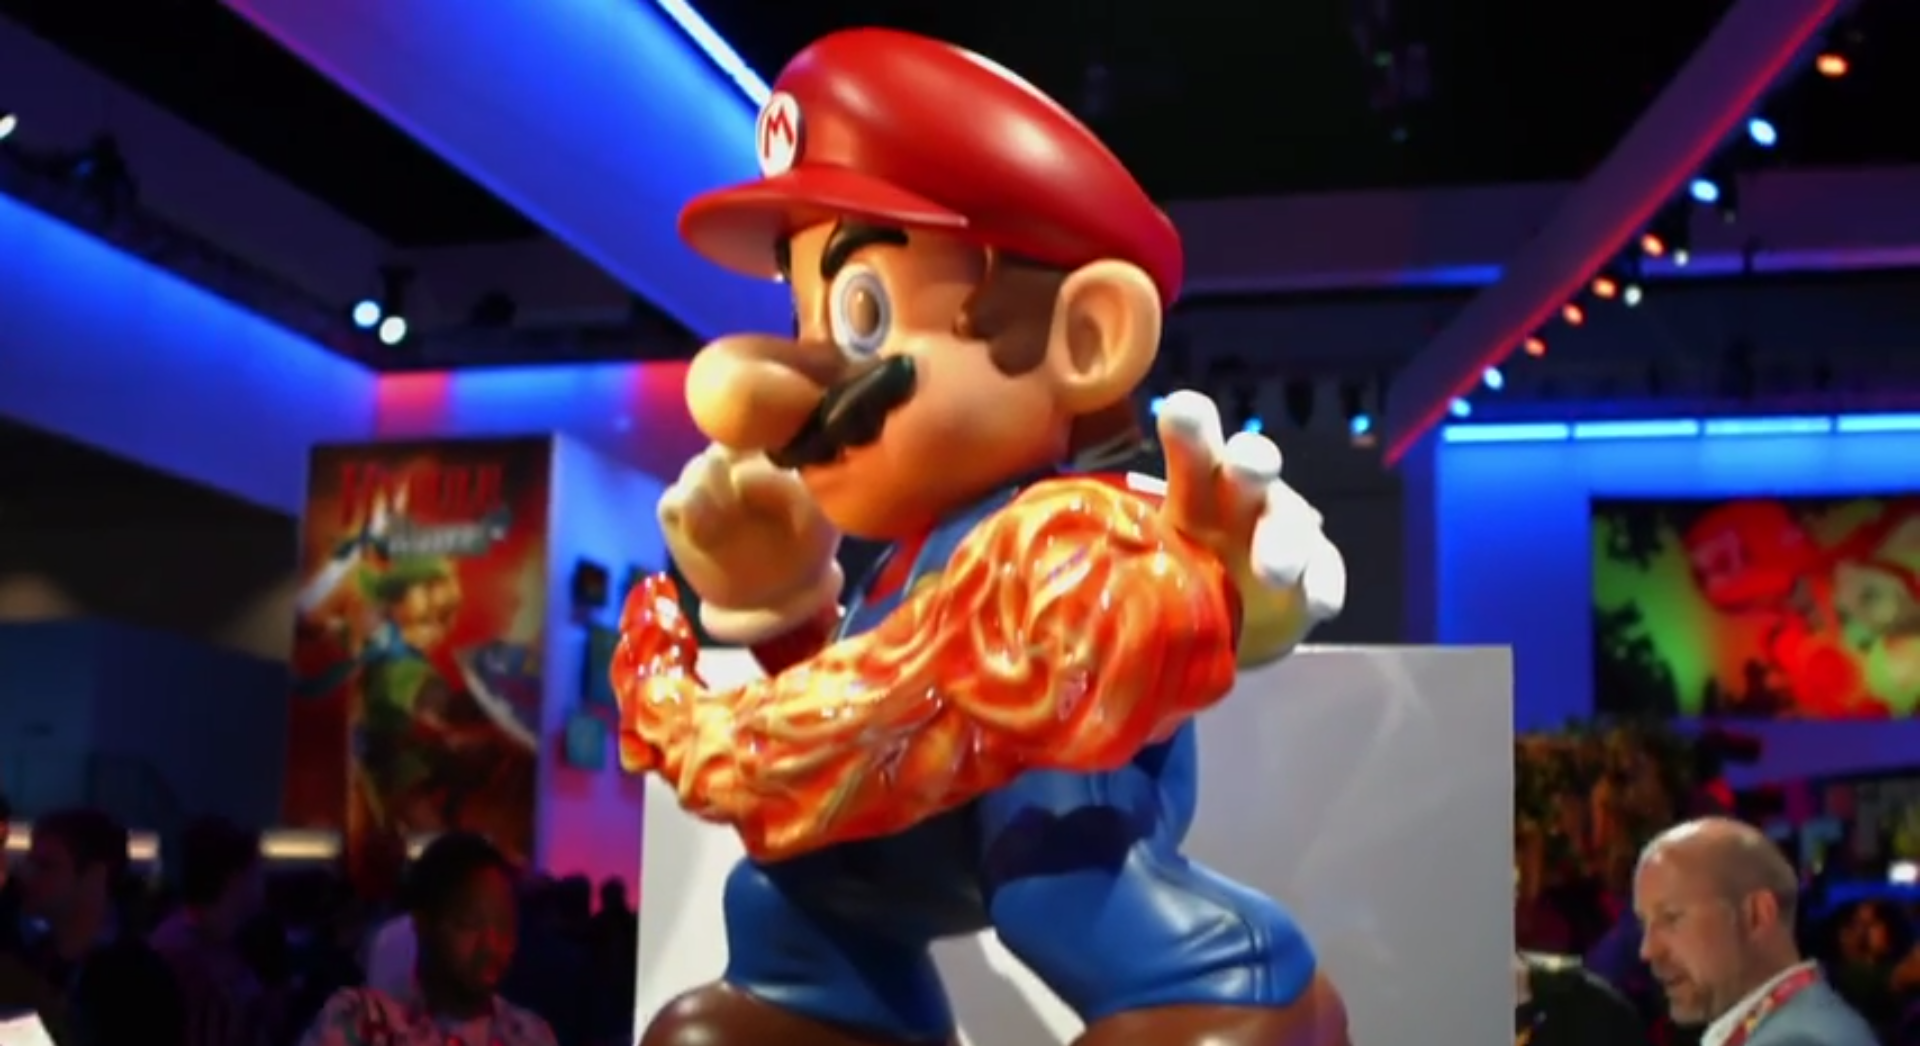 E3 2014 Video: Nintendo E3 Booth Tour